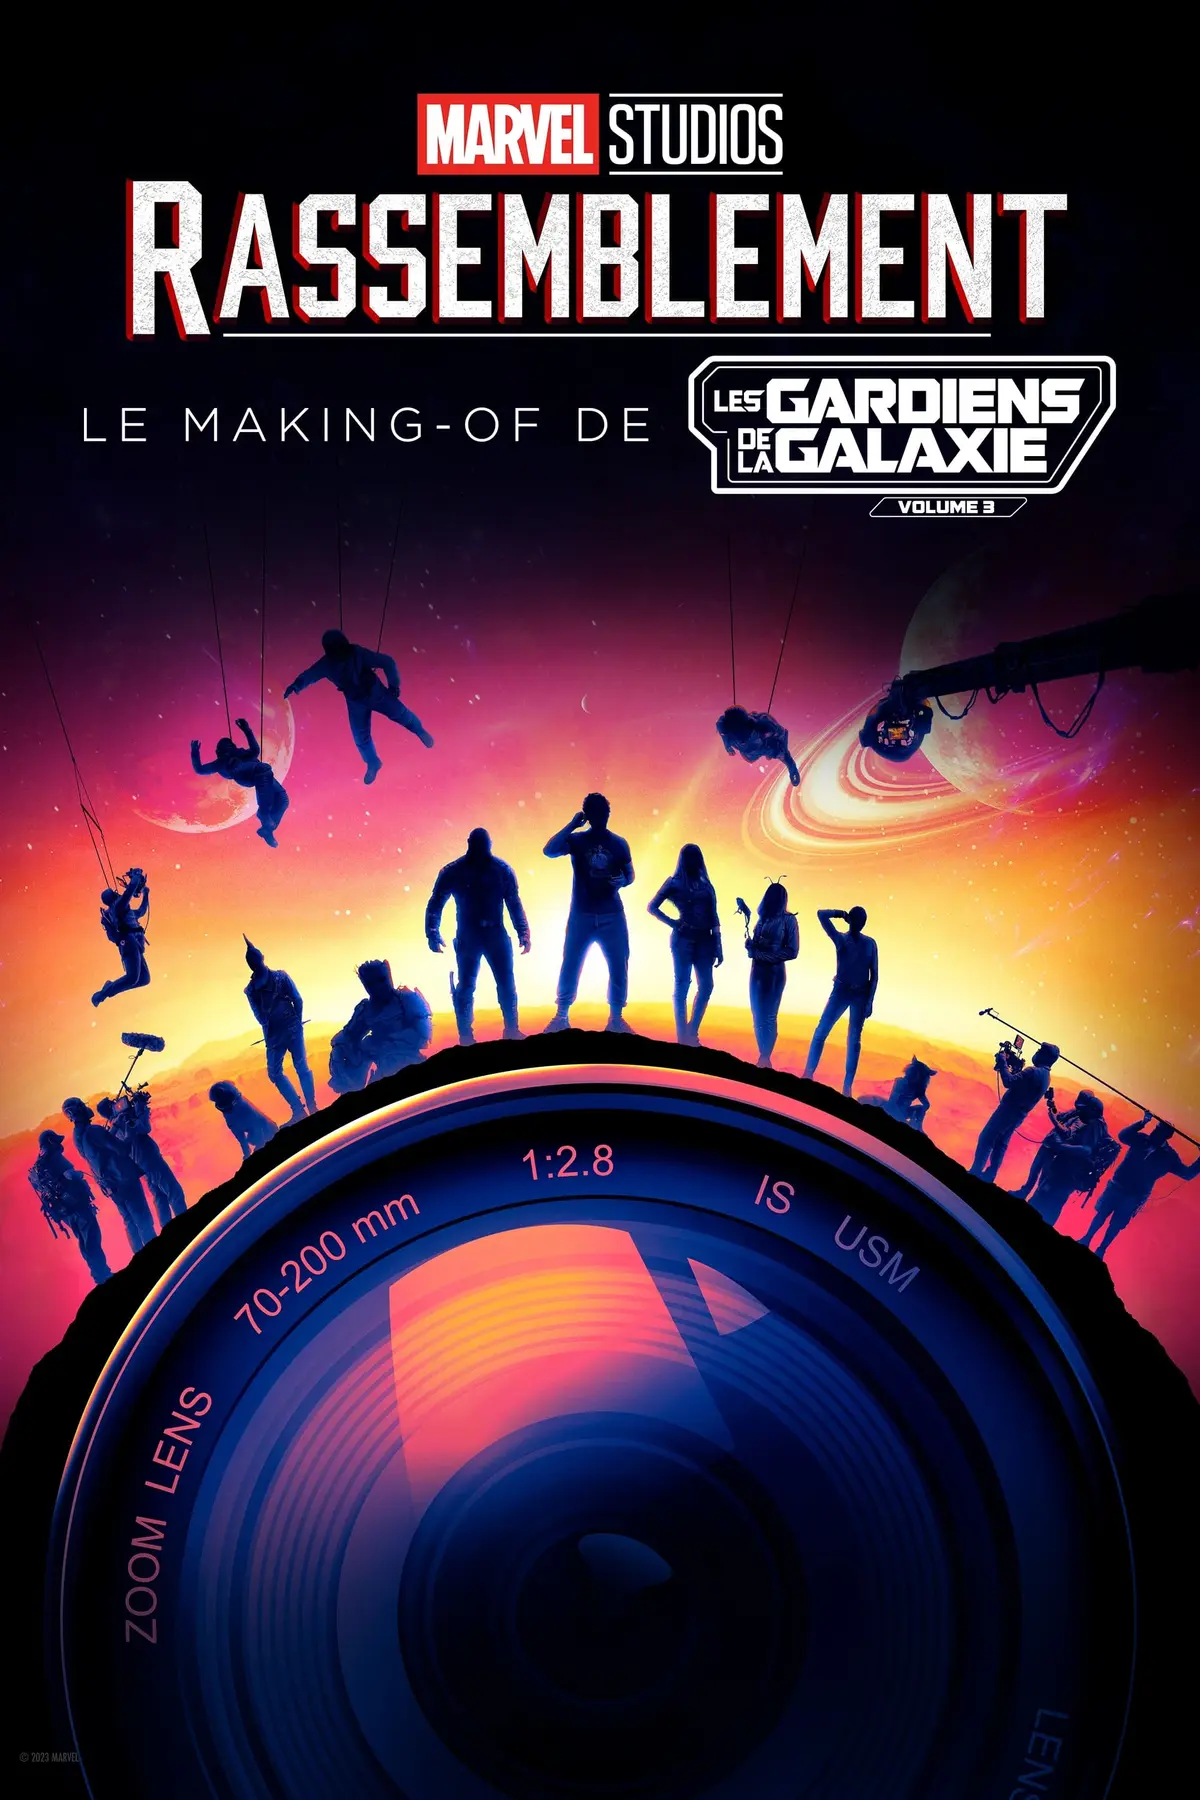 Rassemblement : Le making-of de Les Gardiens de la Galaxie Vol. 3